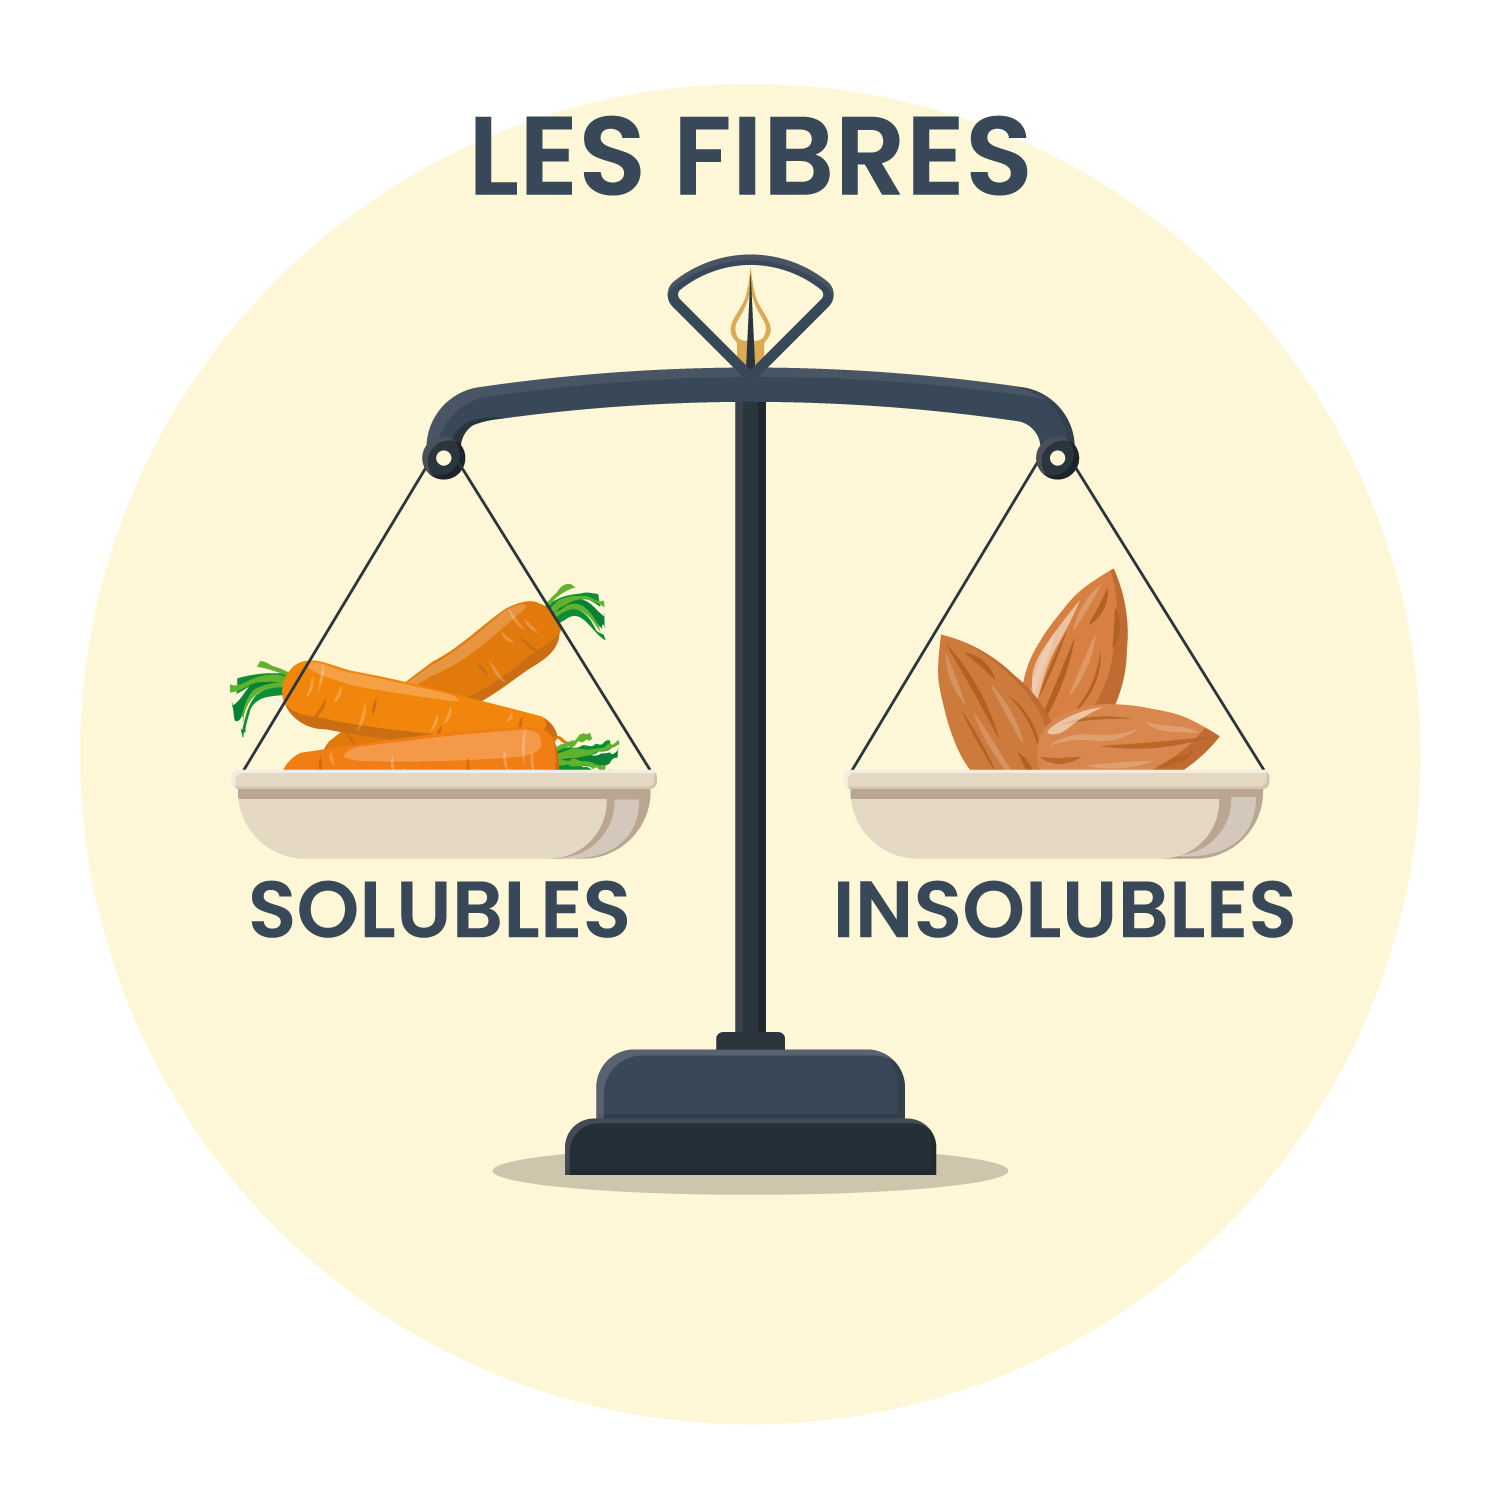 Les fibres alimentaires: Solubles? Insolubles? Pour qui? Pourquoi?